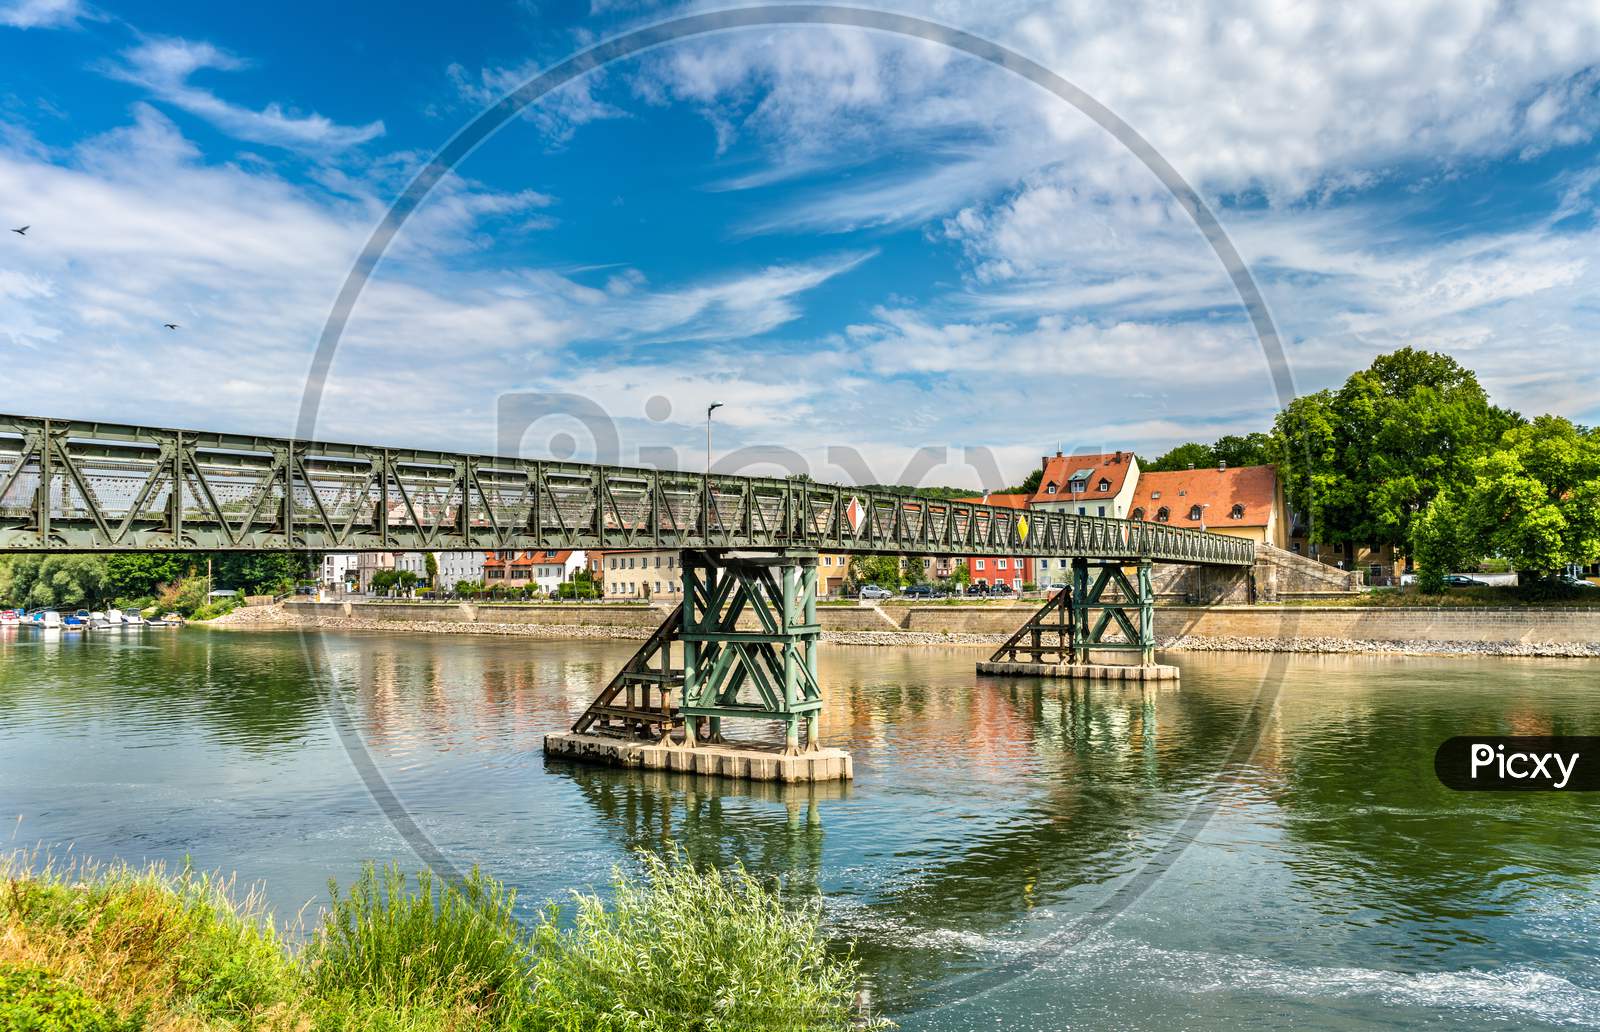 Eiserner Steg Bridge Across The Danube River In Regensburg, Germany